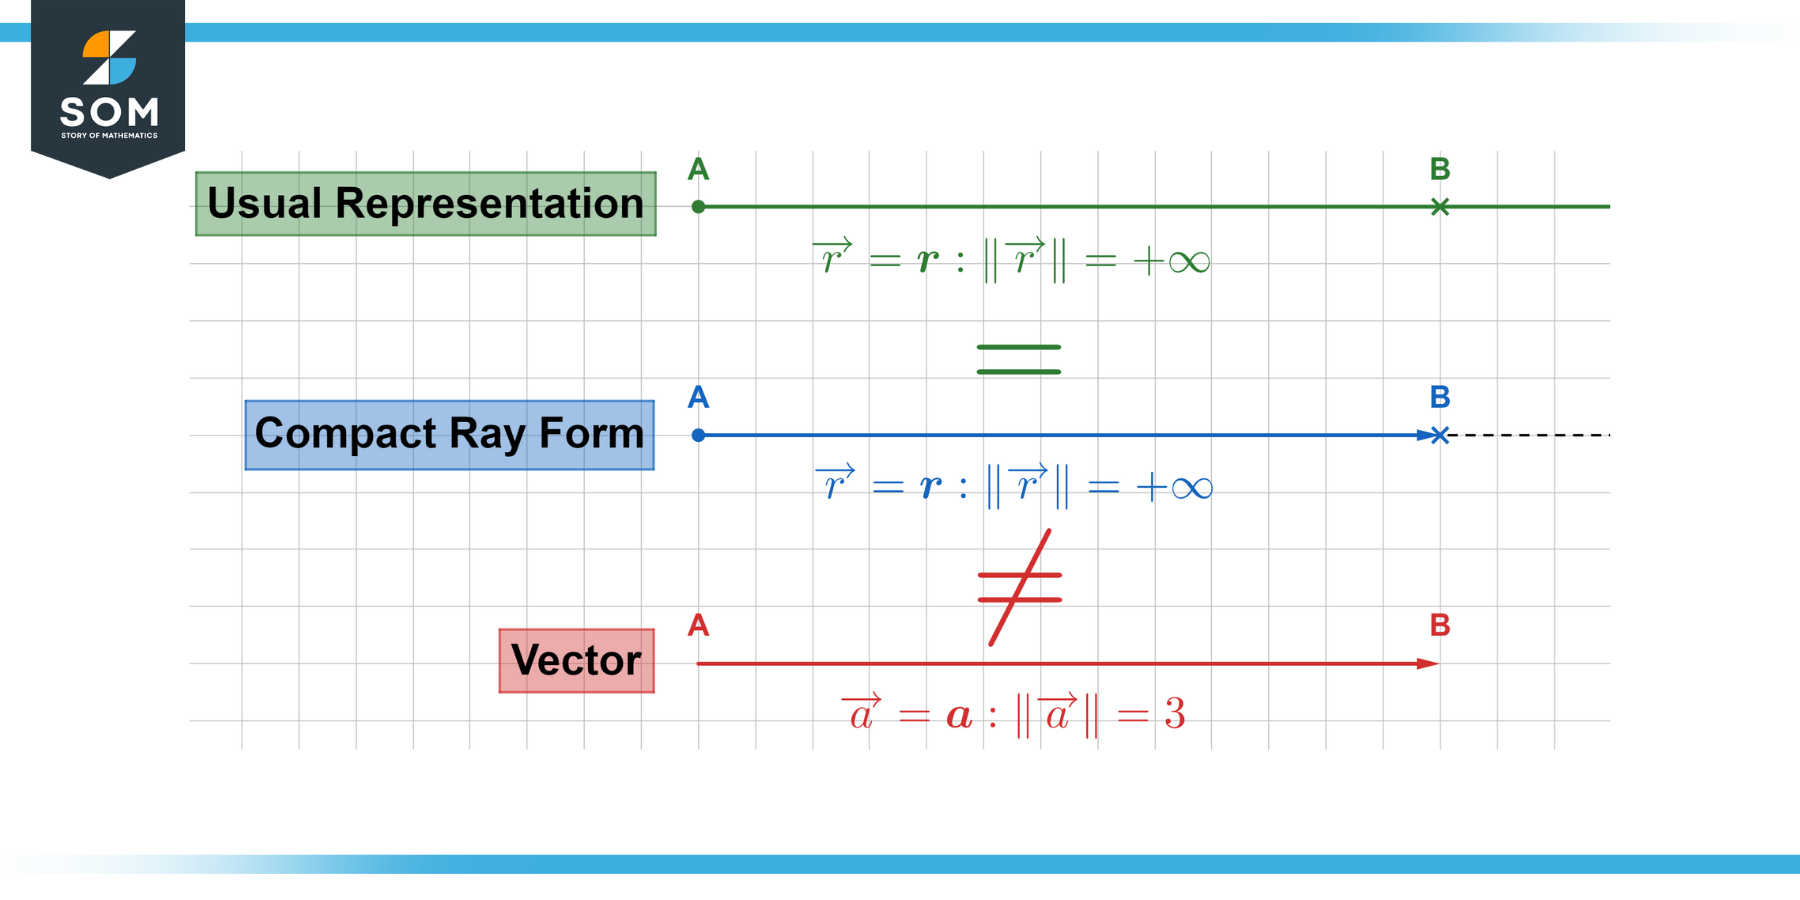 Vectors versus rays